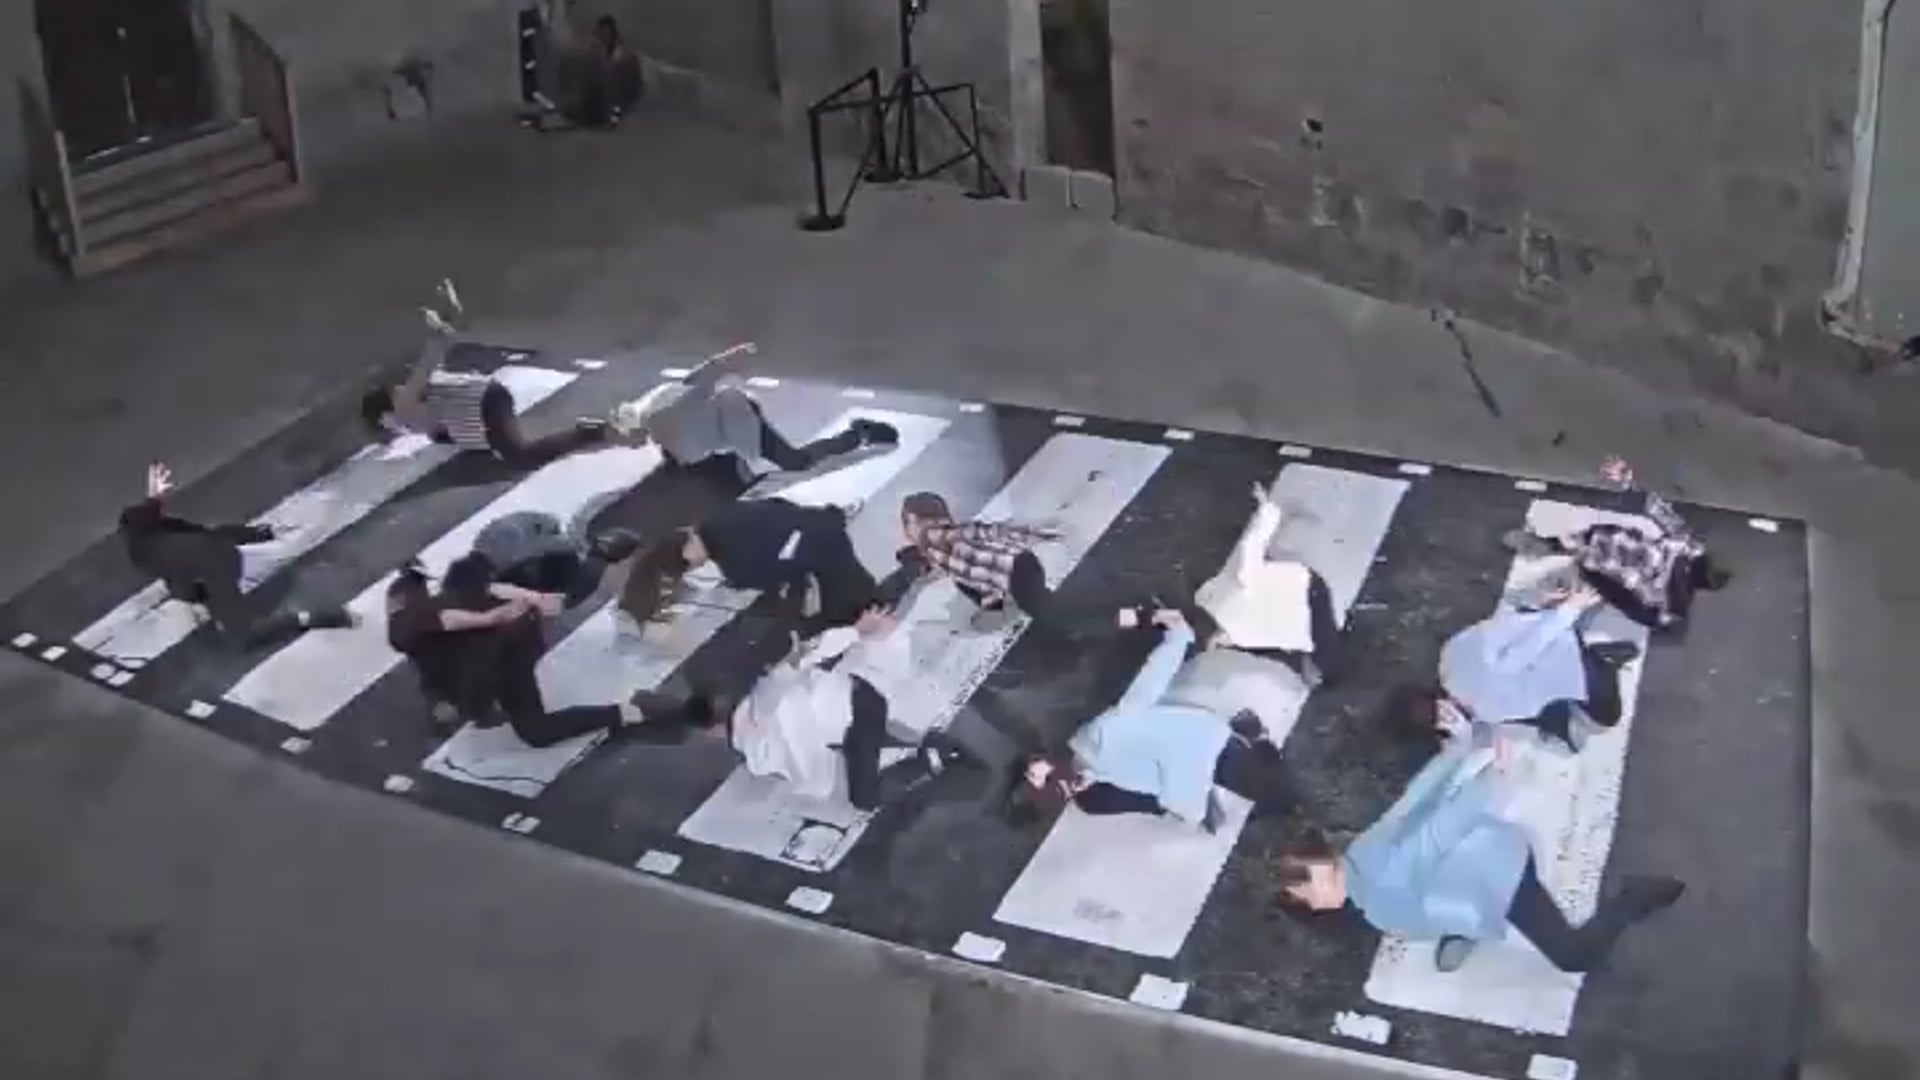 Timelapse - Abbey road à Avignon vu par la webcam de Viewsurf, 2018